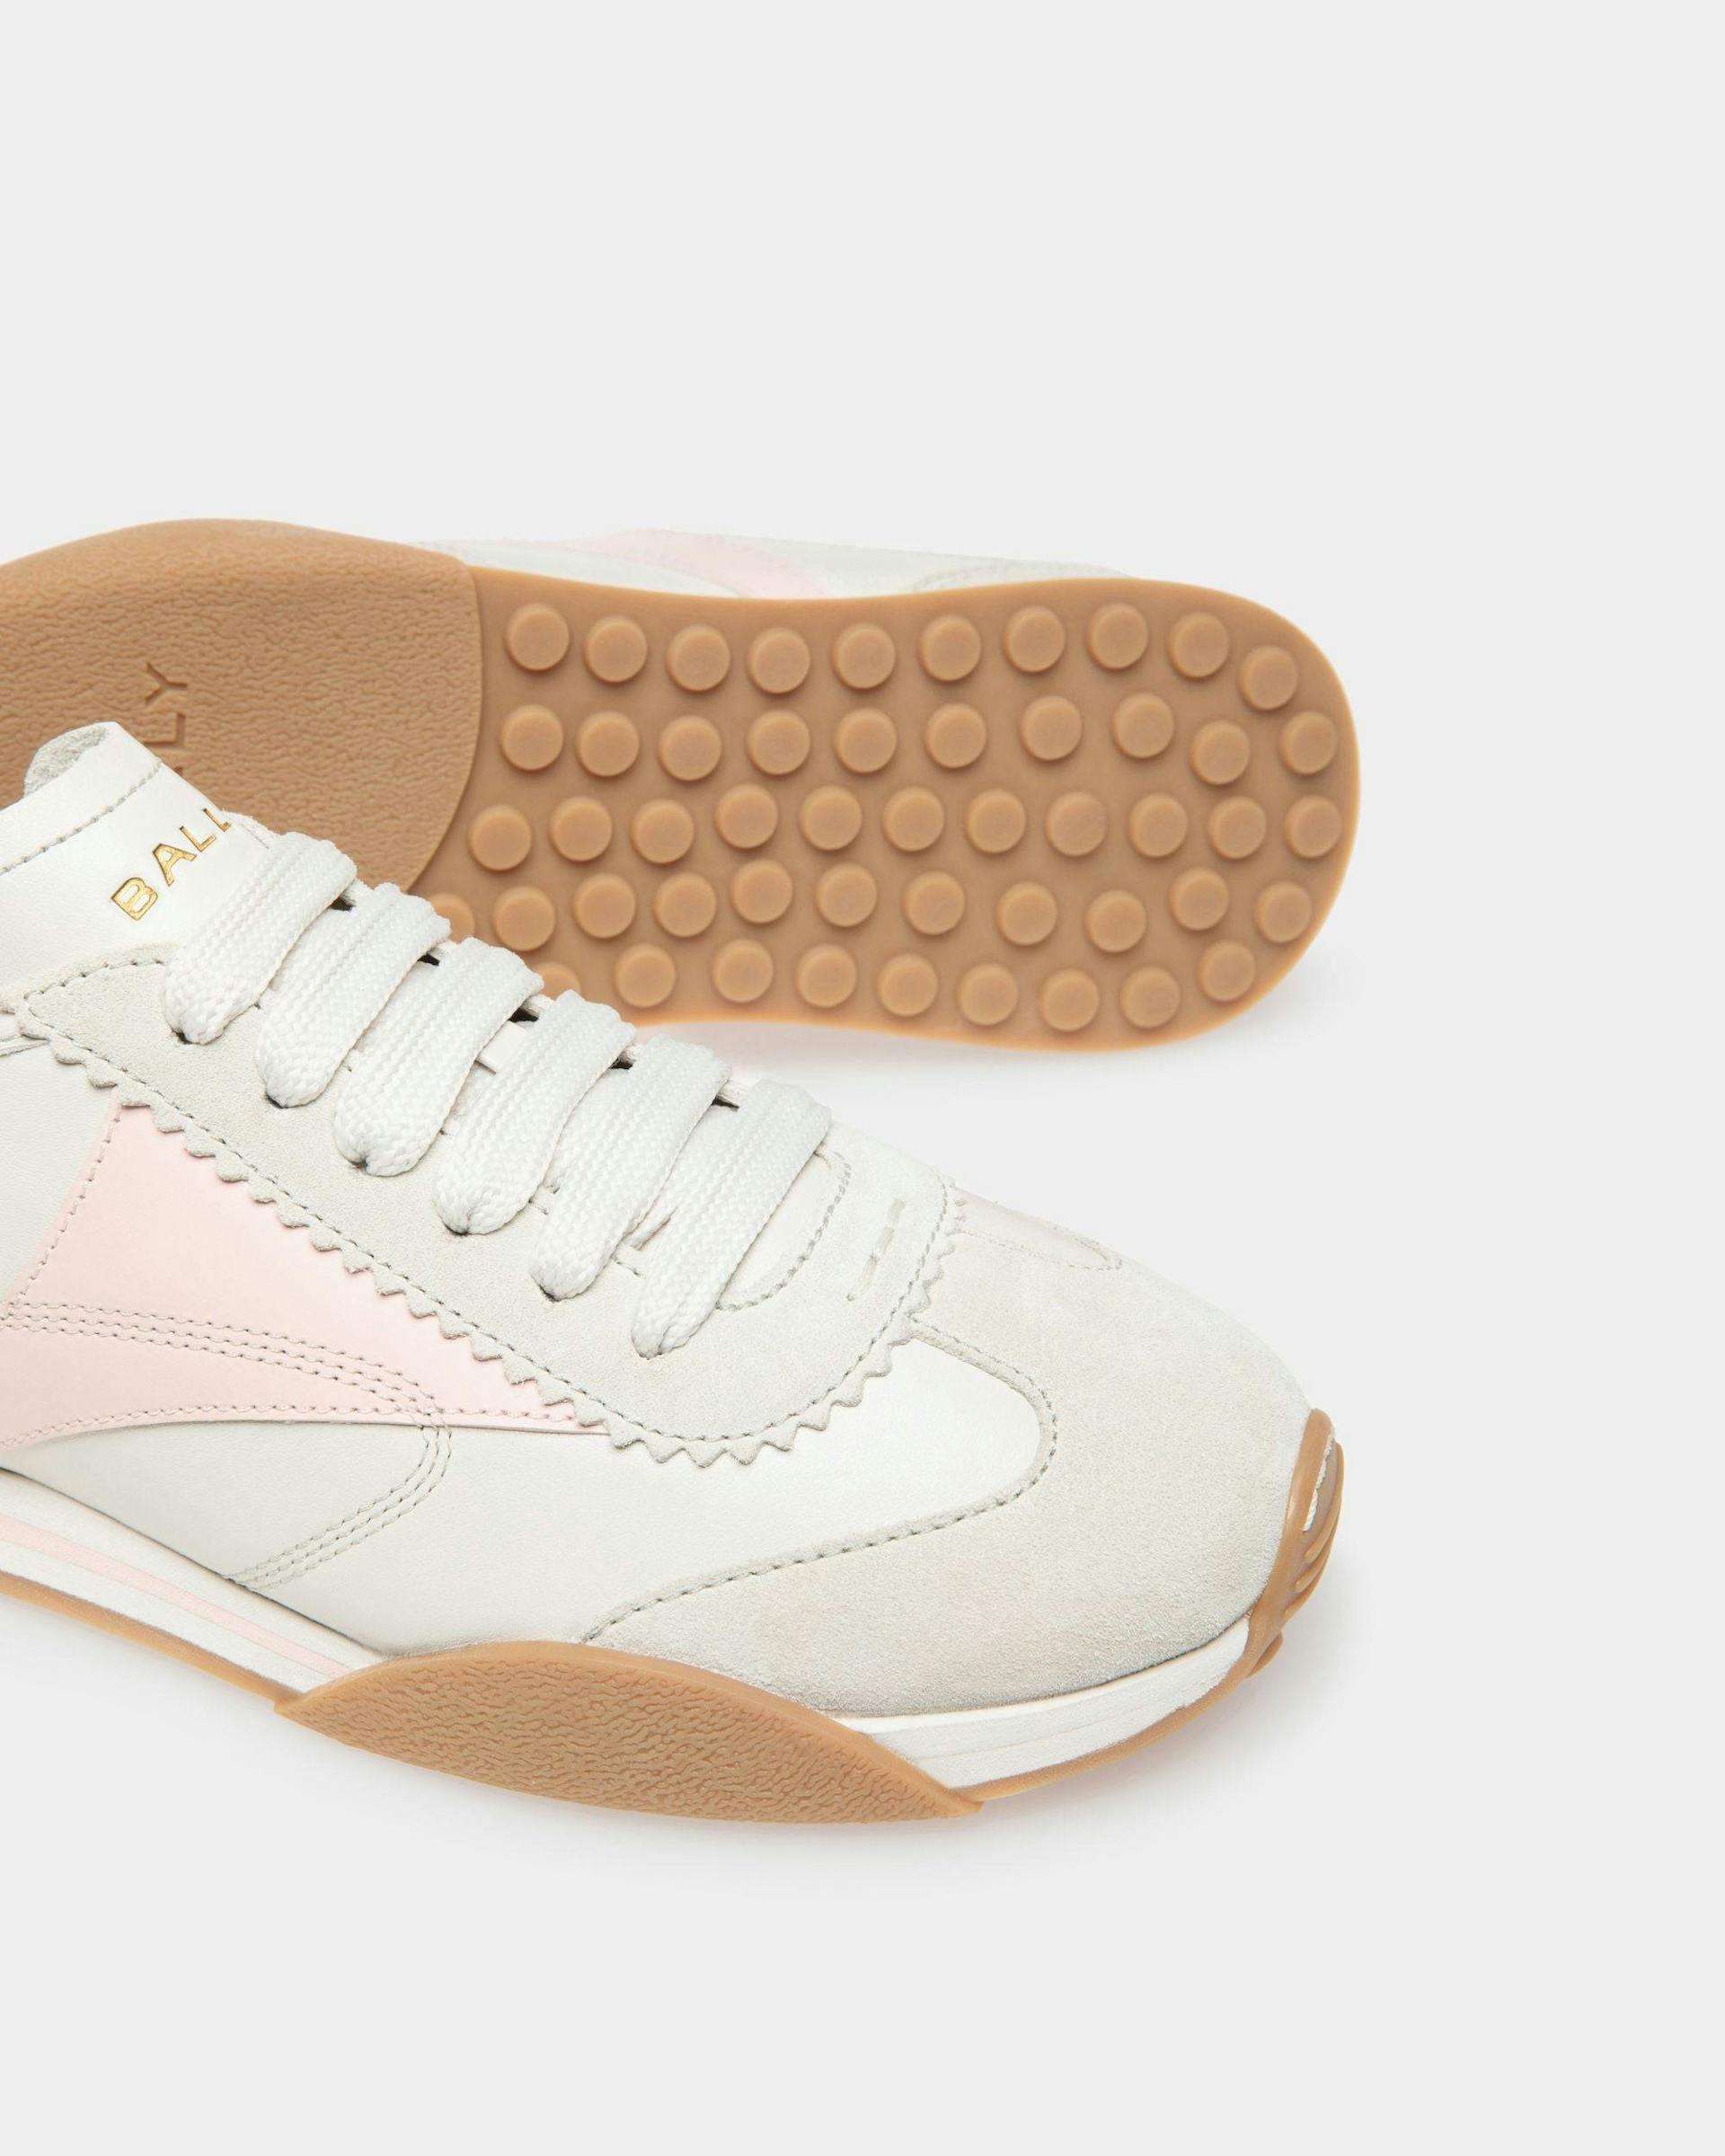 Sneakers Sussex En cuir blanc poussière et rose - Femme - Bally - 04